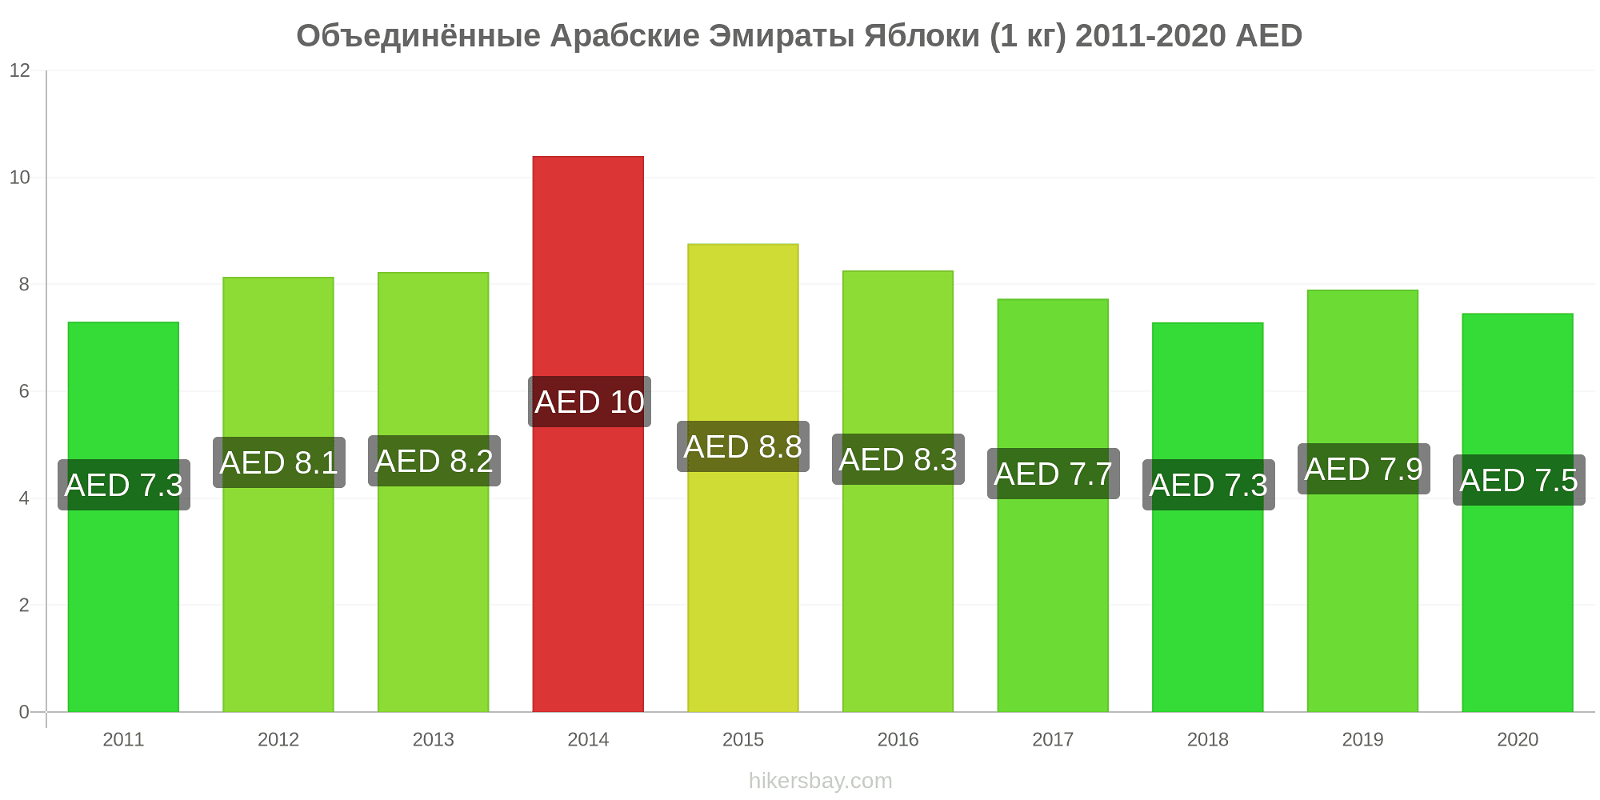 Объединённые Арабские Эмираты изменения цен Яблоки (1 кг) hikersbay.com